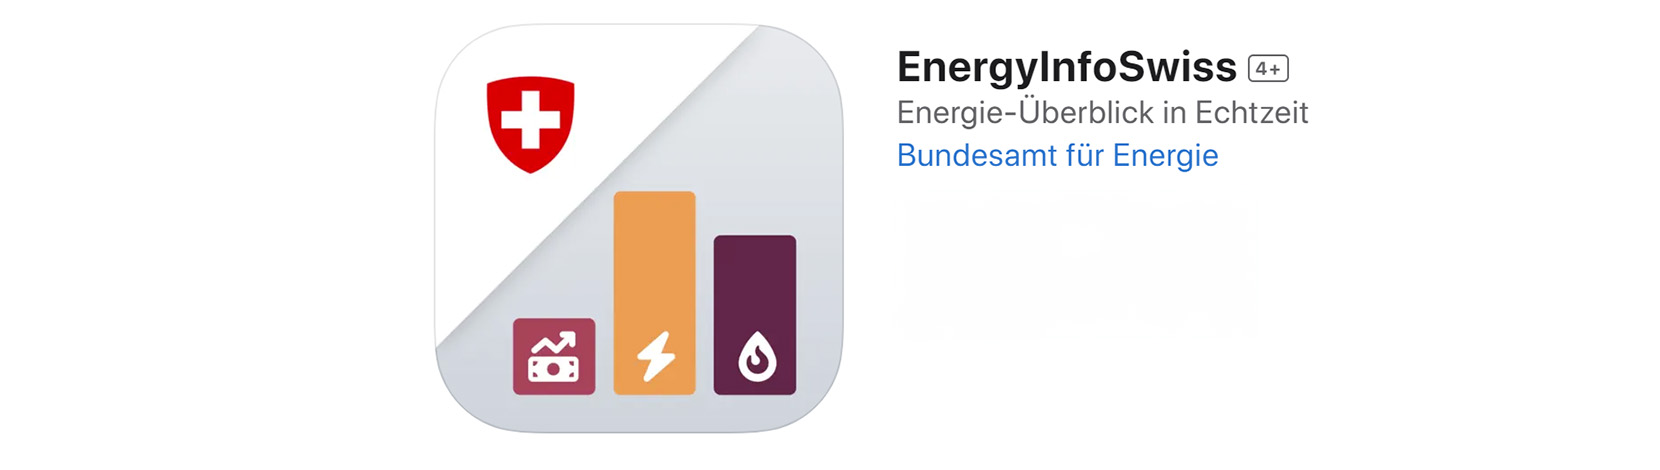 EnergyInfoSwiss: Neue App mit aktuellen Daten zur Energieversorgung der Schweiz – Electrosuisse